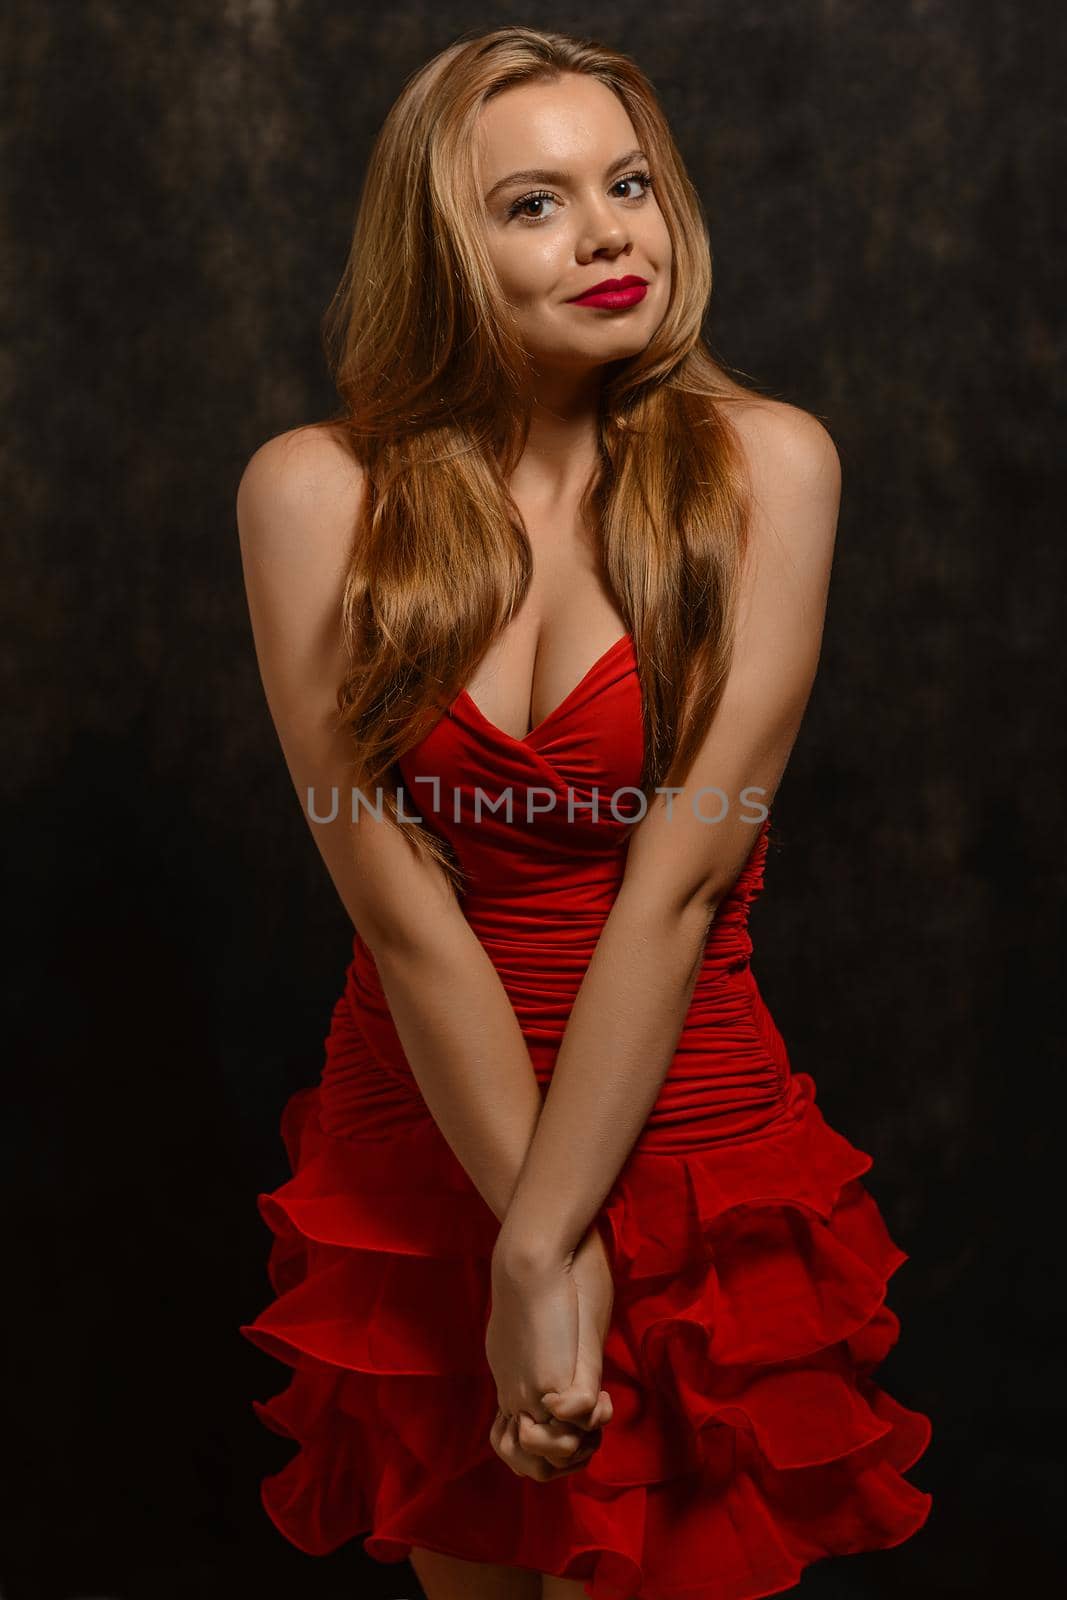 Beautiful blond woman in elegant red dress. by zartarn